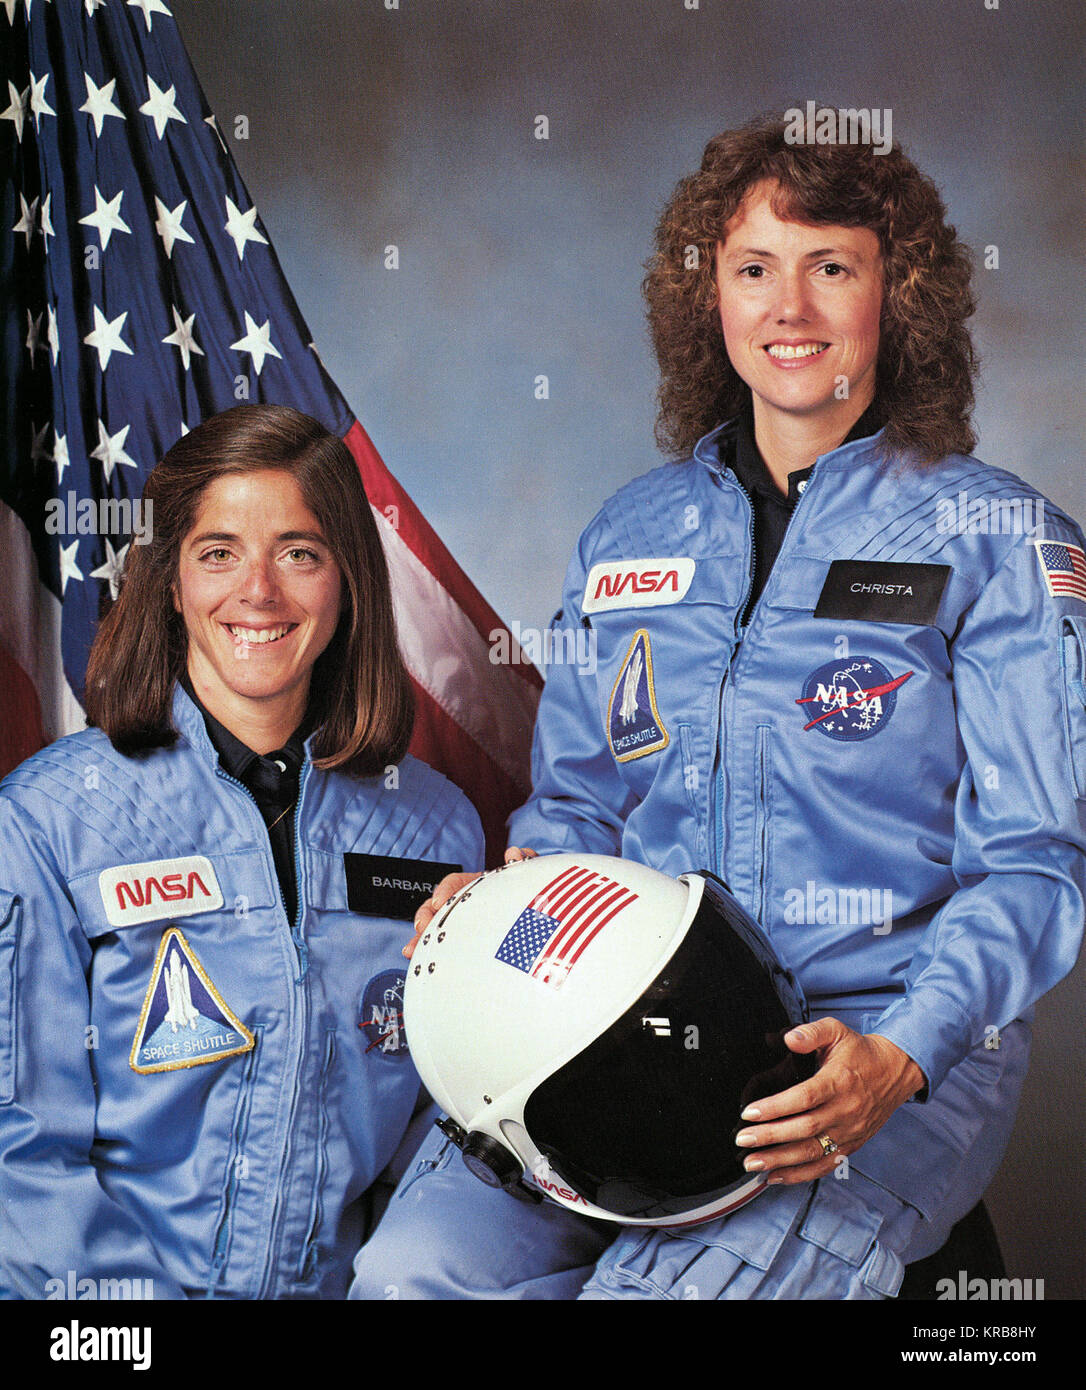 Christa McAuliffe und Barbara Morgan, Lehrer im Raum Primär- und Backup Crew Mitglieder für Shuttle Mission STS-51 L. Die Mission endete im Scheitern, wenn der Orbiter Challenger 73 Sekunden nach dem Start am 28. Januar 1986 explodierte. Christa McAuliffe und Barbara Morgan - GPN -2002-000004 Stockfoto